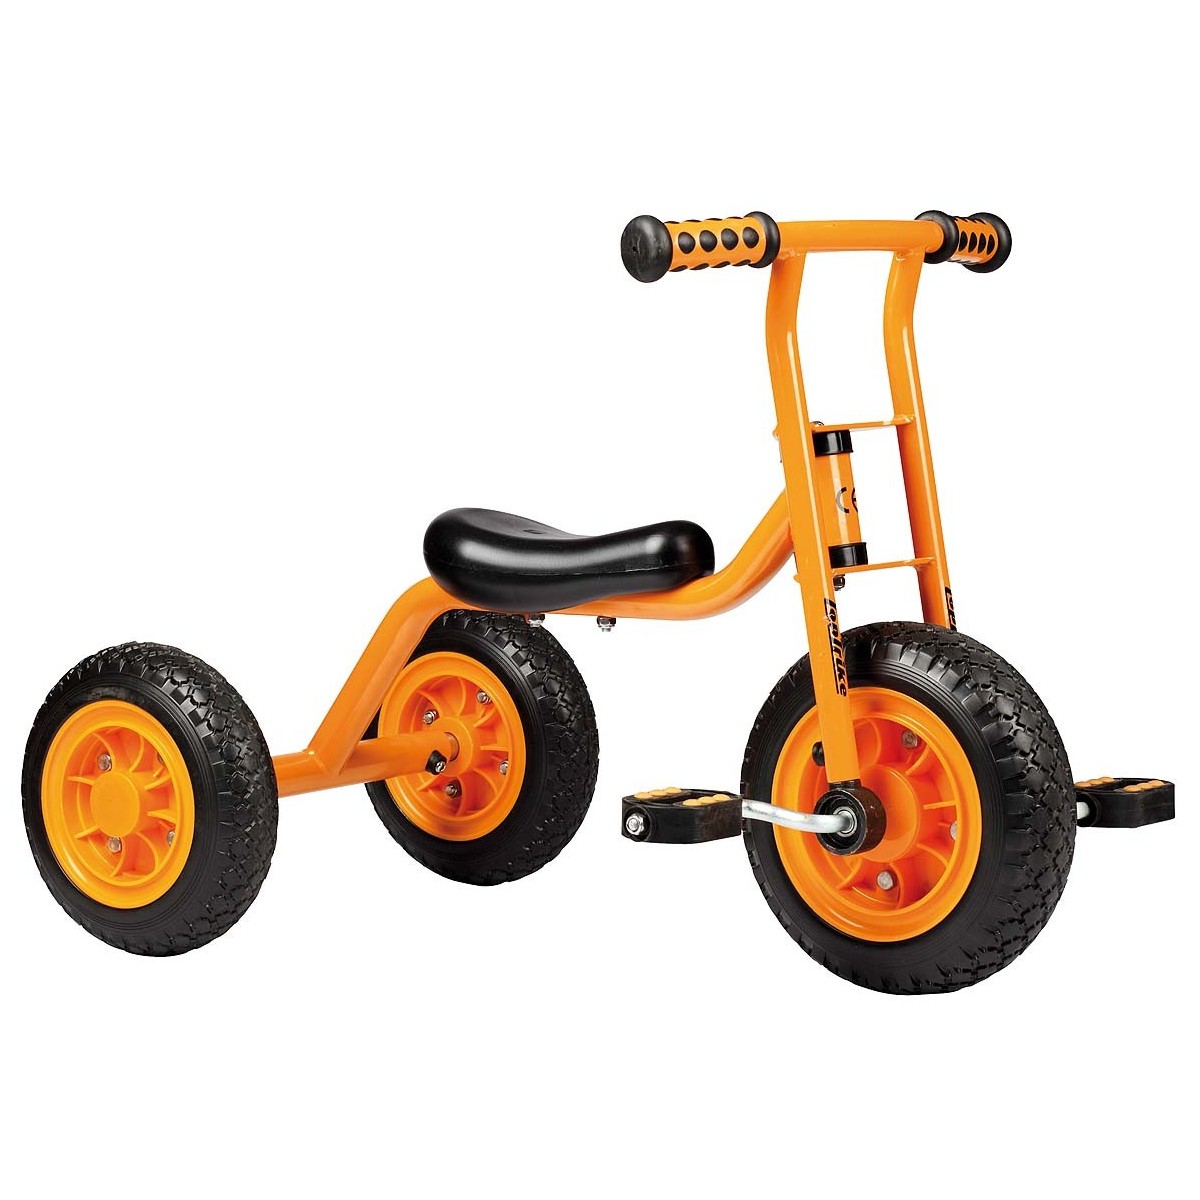 Petit Tricycle Top Trike - 1 - Avec le petit tricycle Top Trike, désormais, les plus petits peuvent pédaler!
Le petit tricycle 